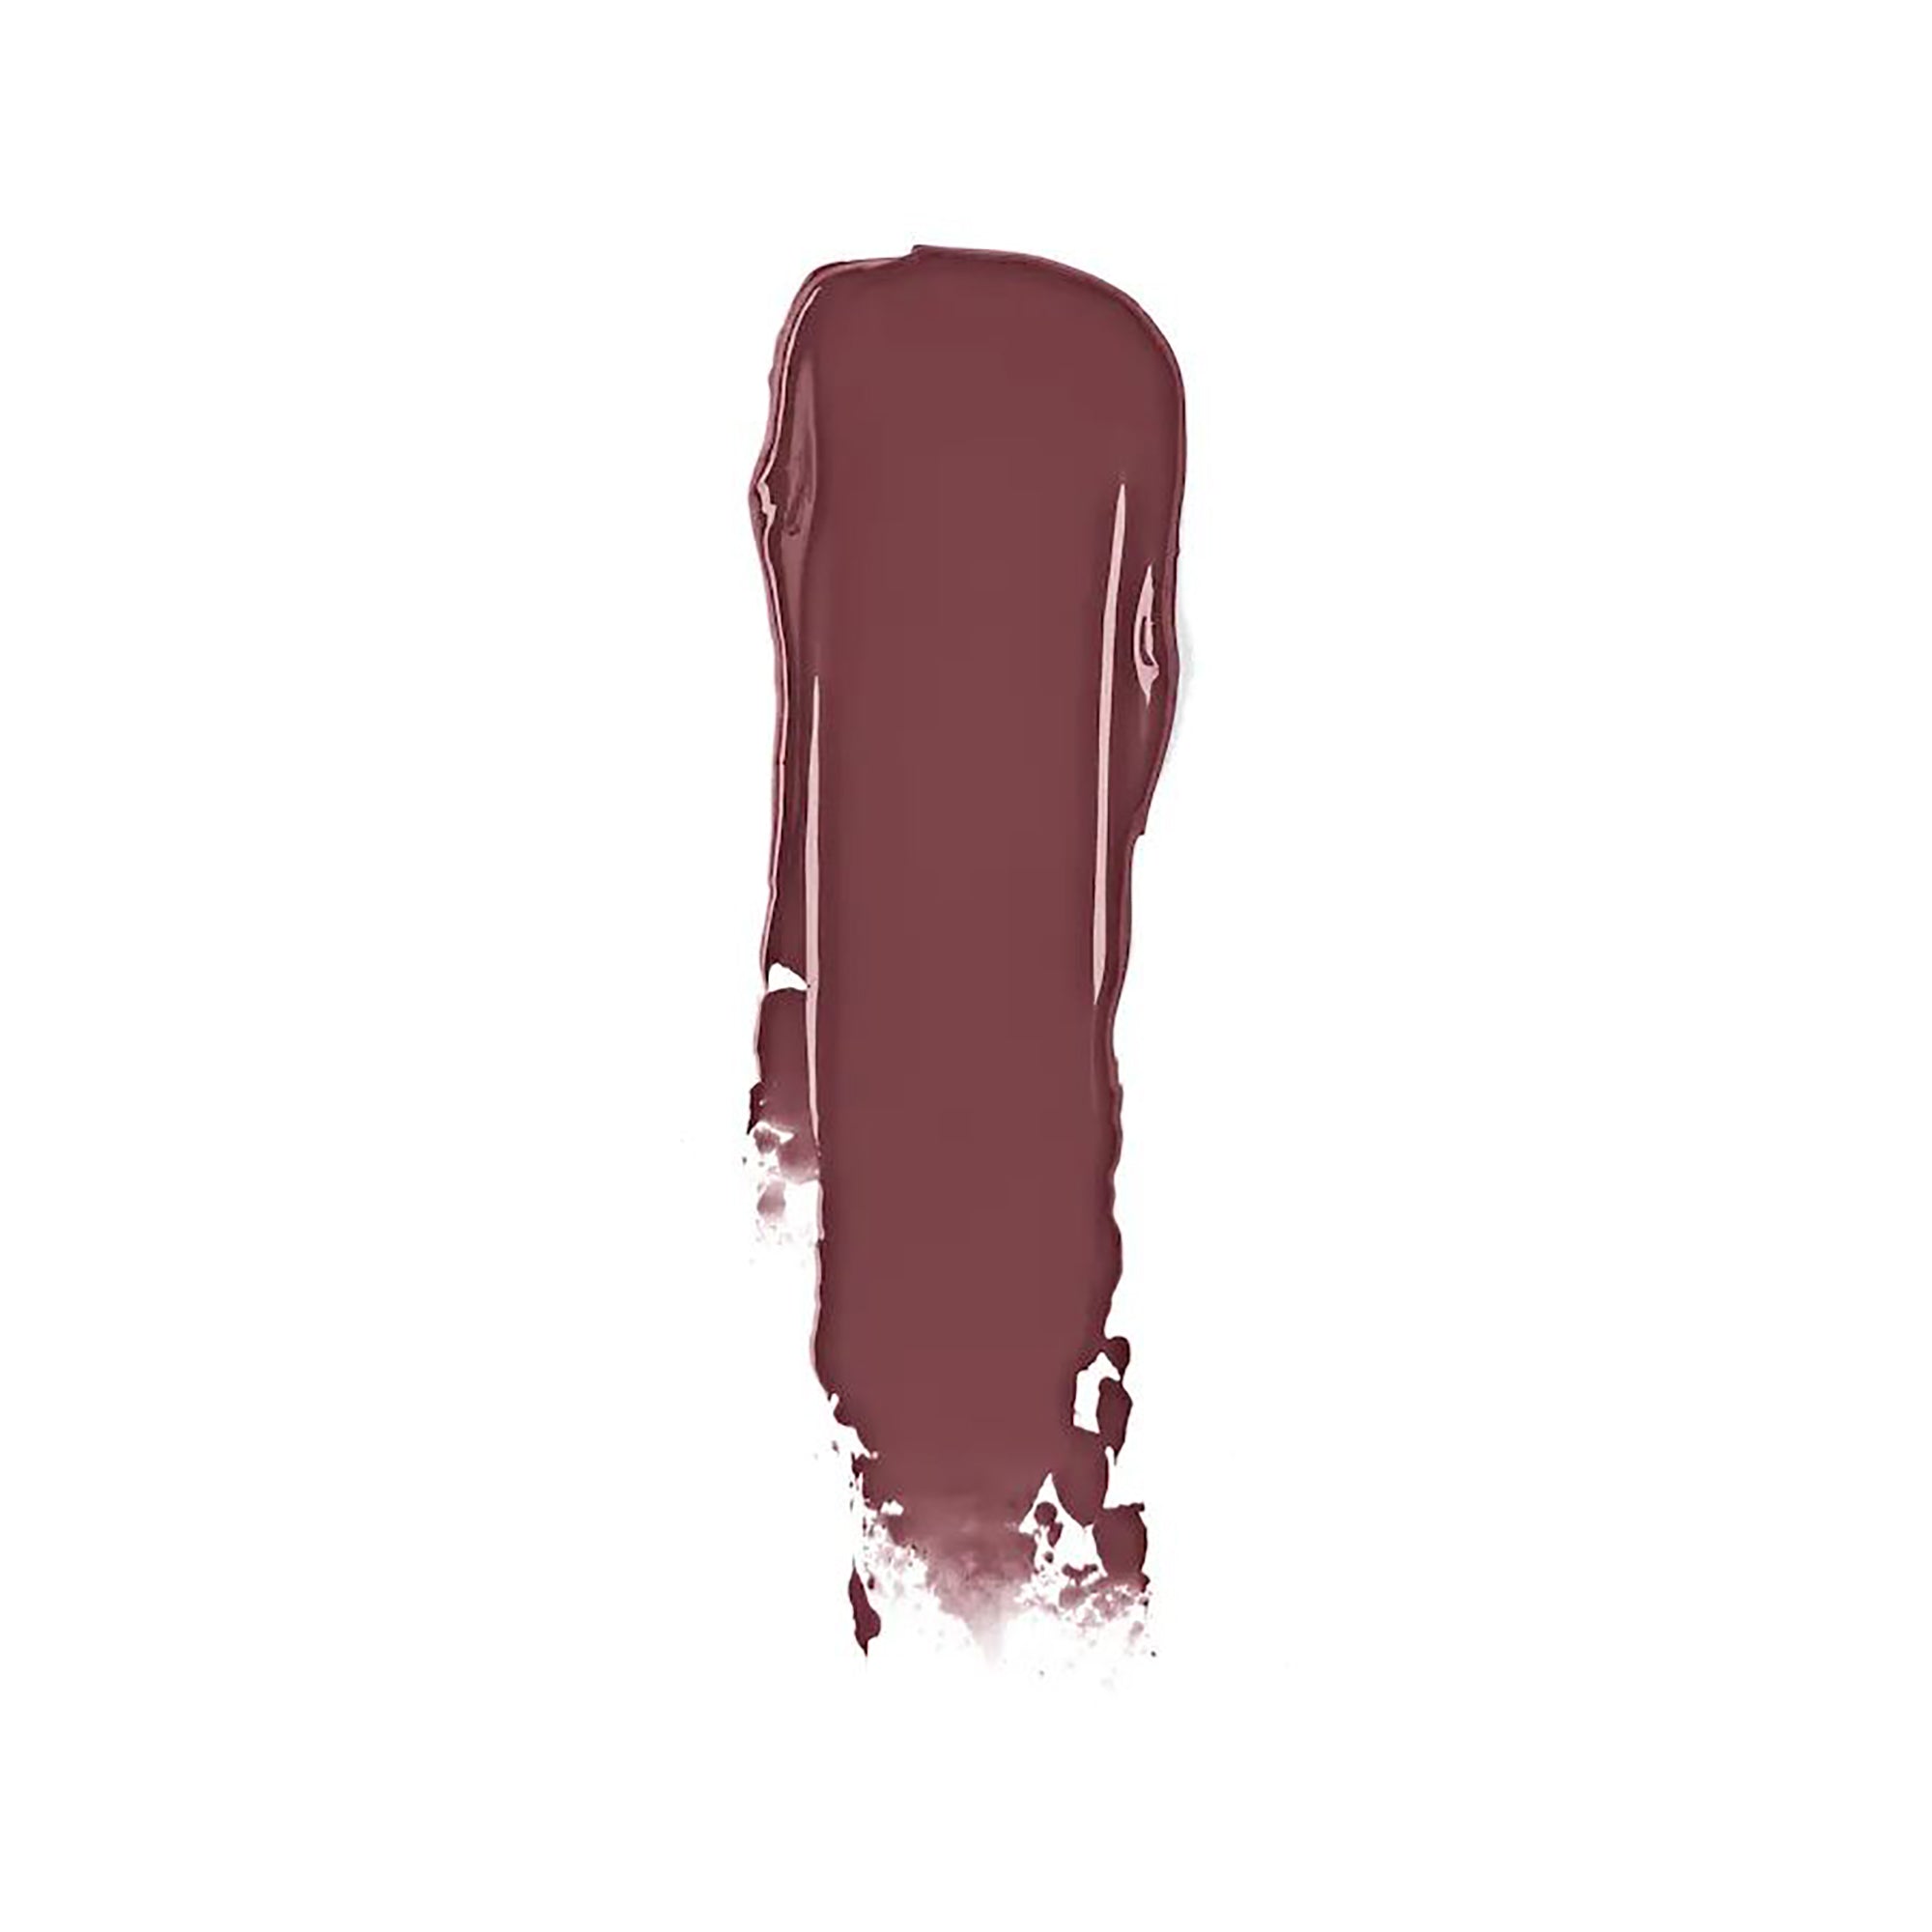 Smashbox Always On Matte Liquid Lipstick / SPOILER ALERT / SWATCH